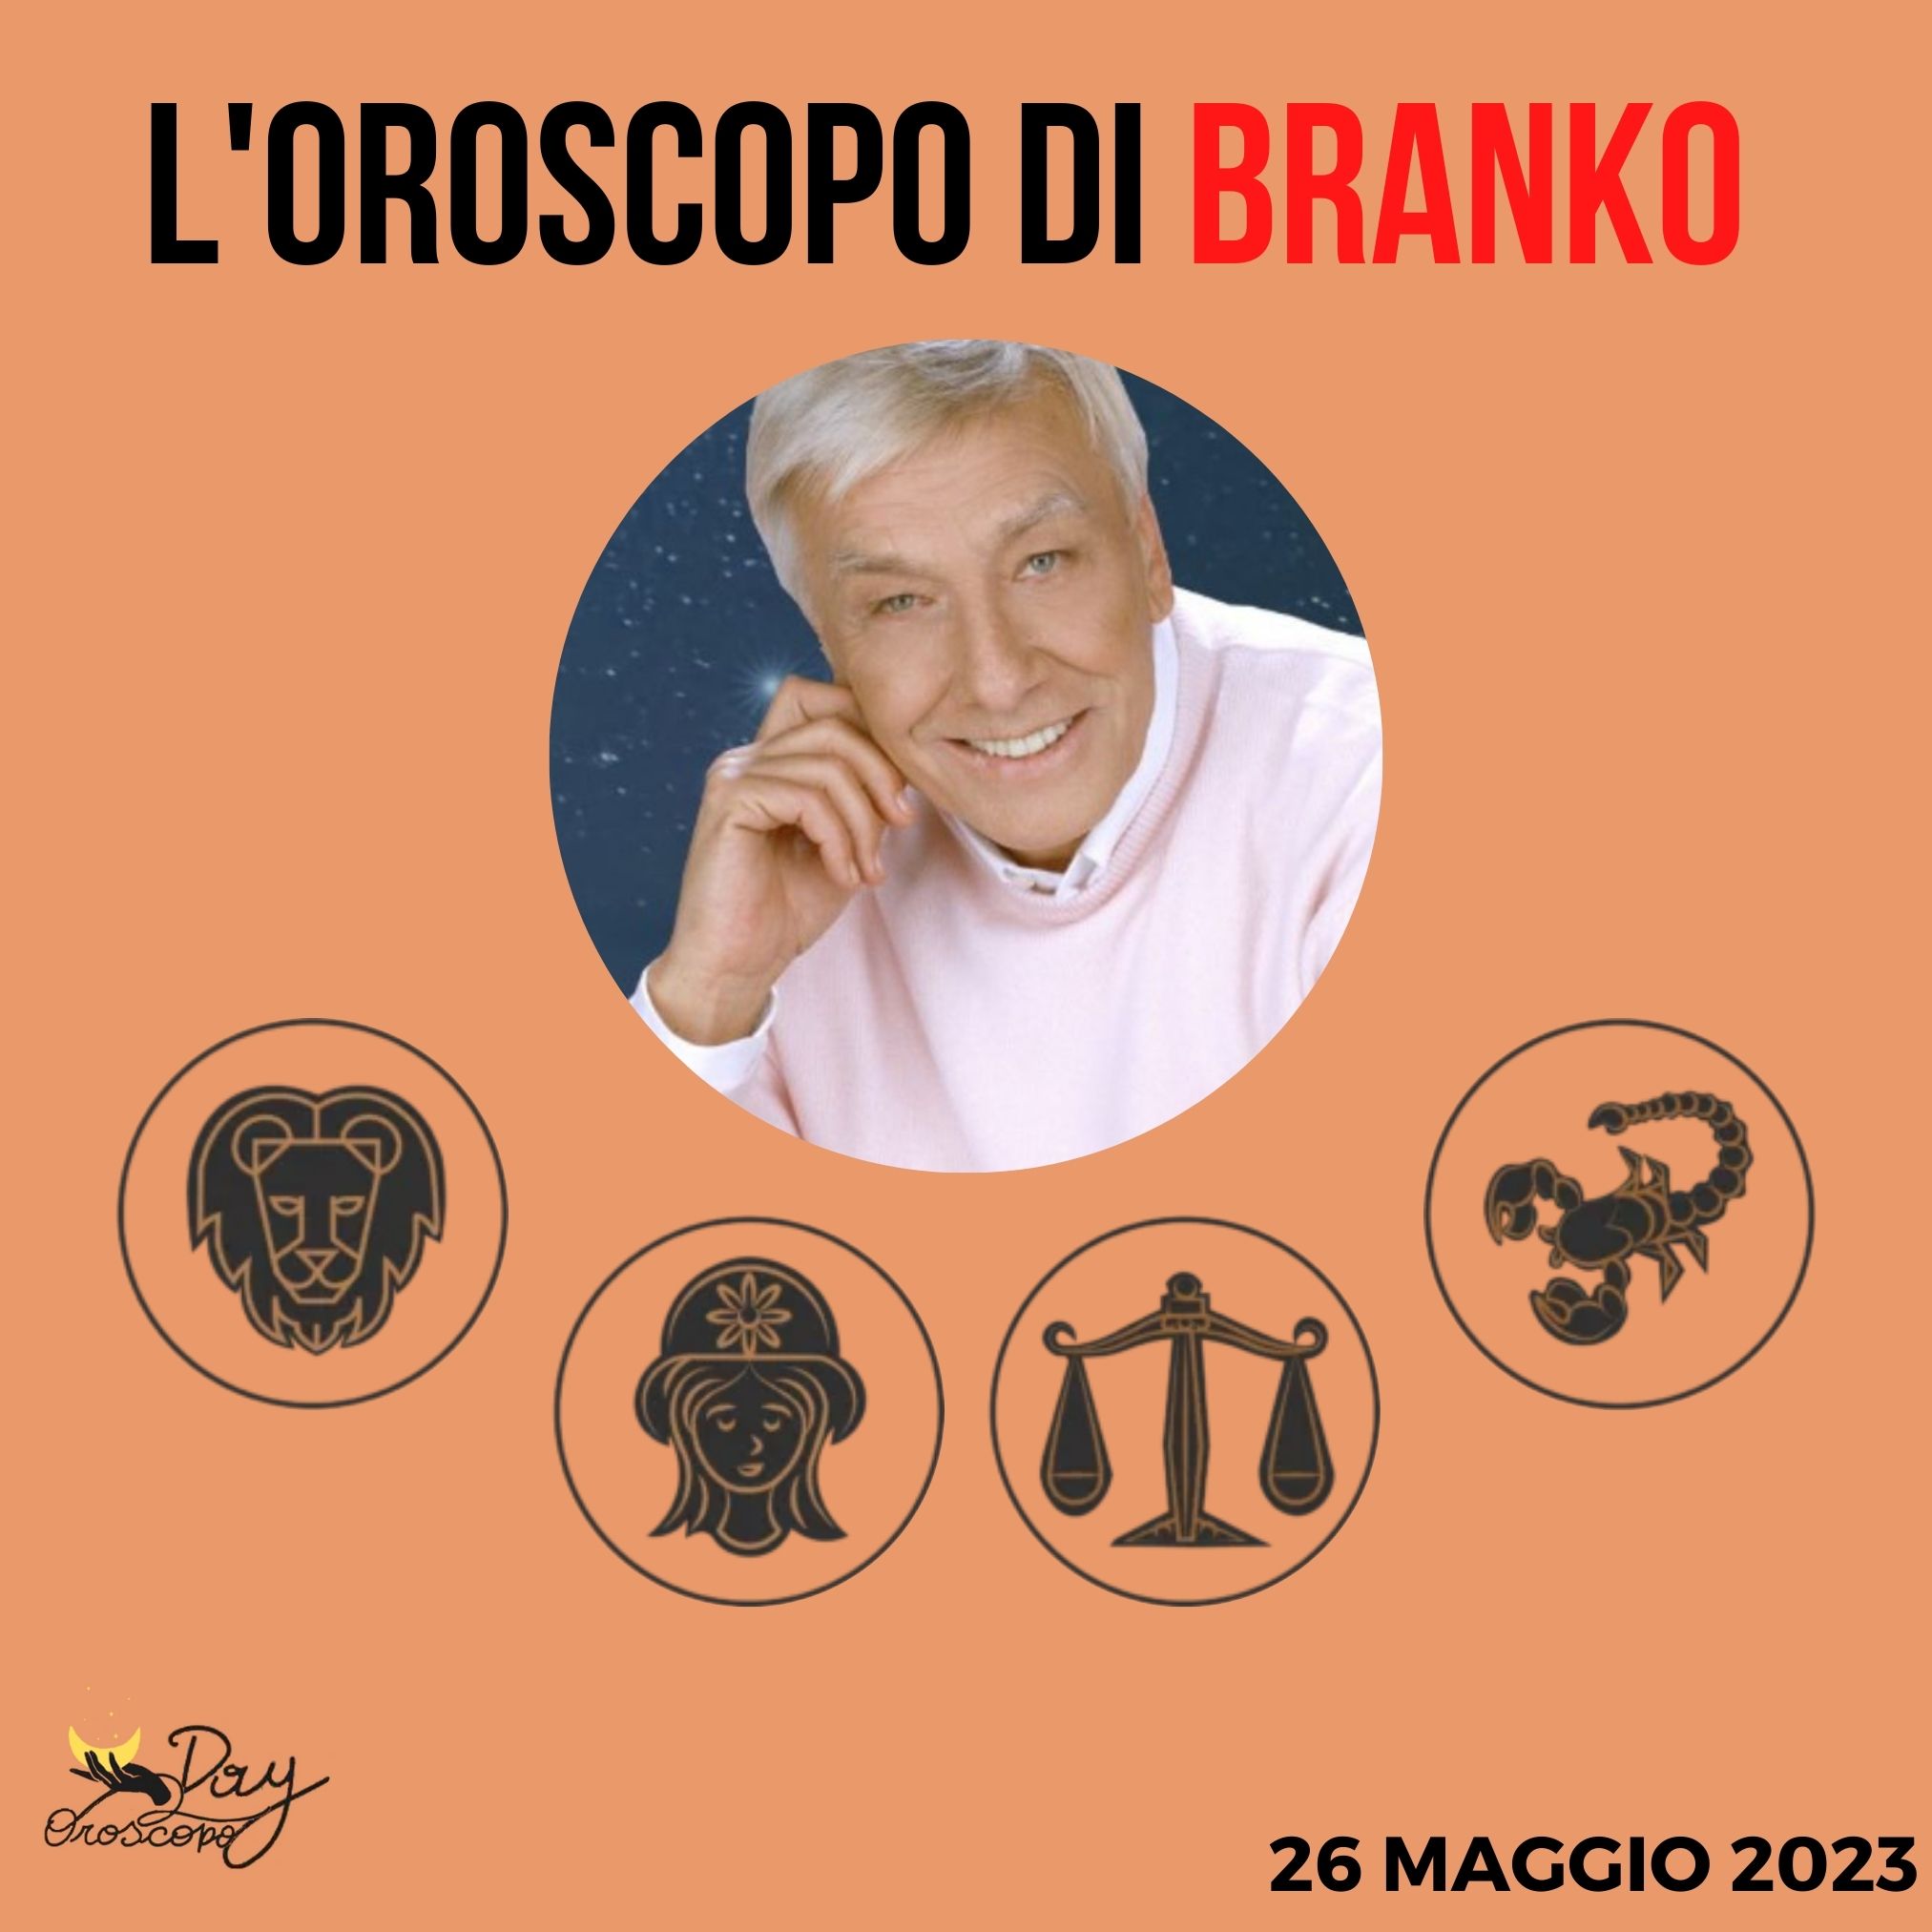 Oroscopo oggi domani Branko 26 maggio Leone Vergine Bilancia Scorpione